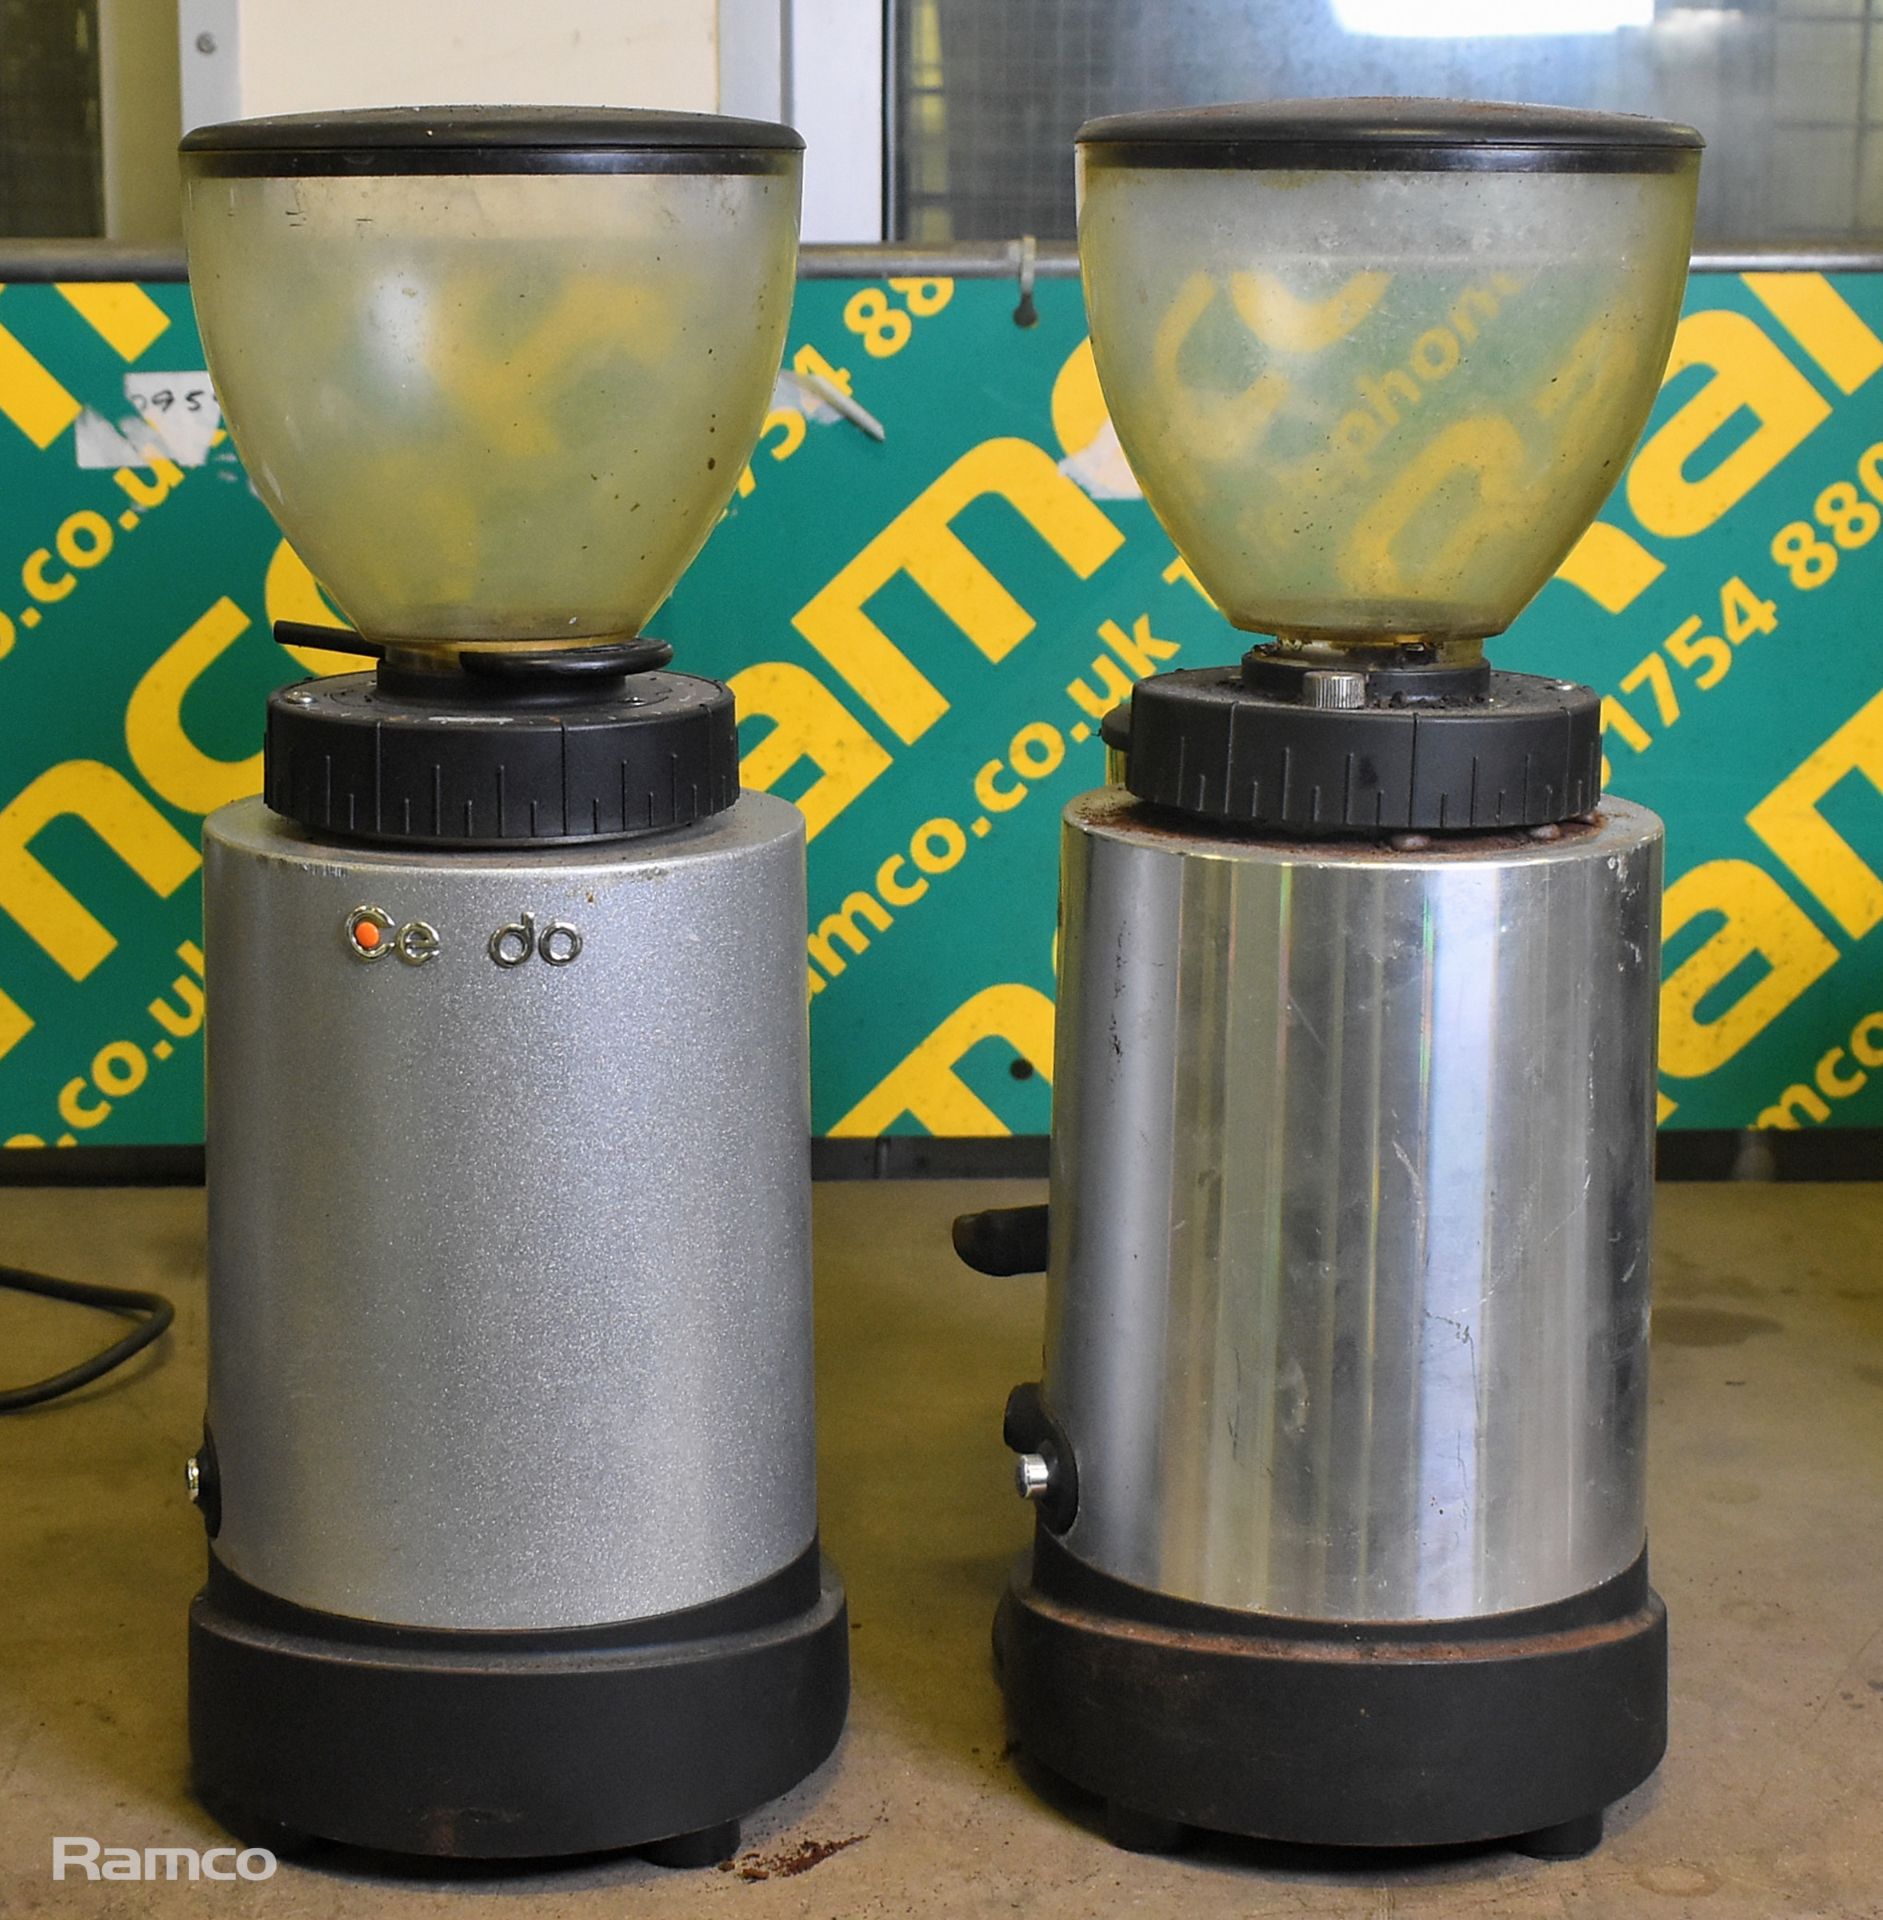 Ceado E6X espresso coffee grinder, Ceado E6P espresso coffee grinder - Image 3 of 6